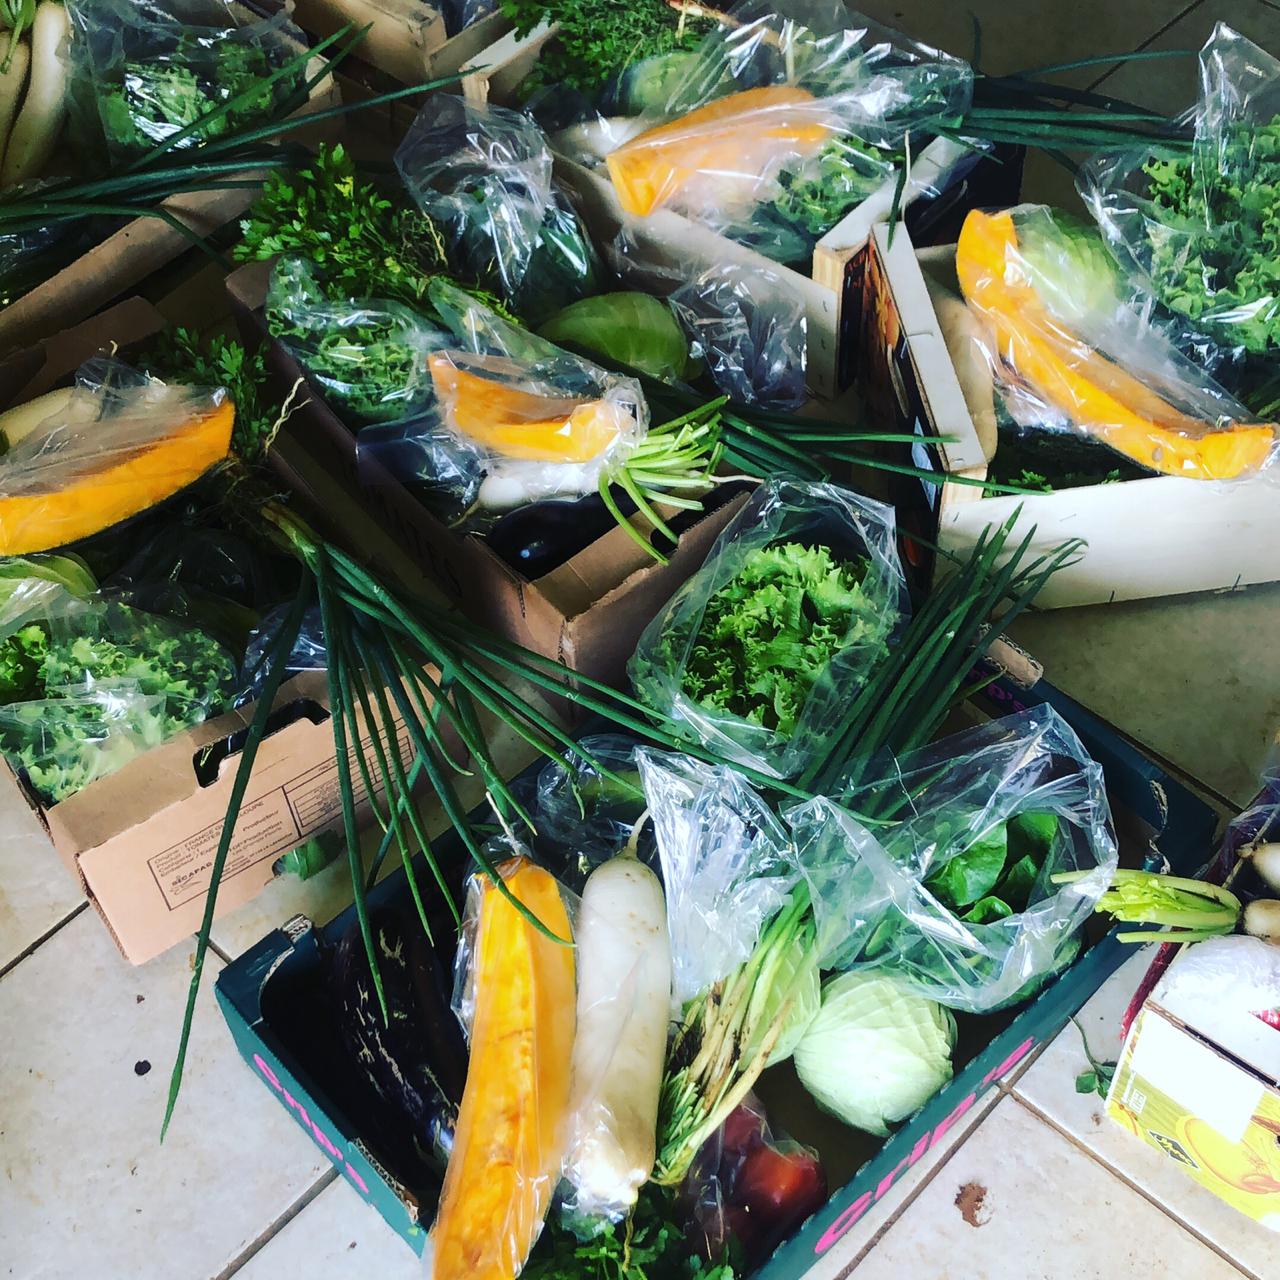     Des paniers de fruits et légumes frais livrés par des jeunes sur toute la Guadeloupe

